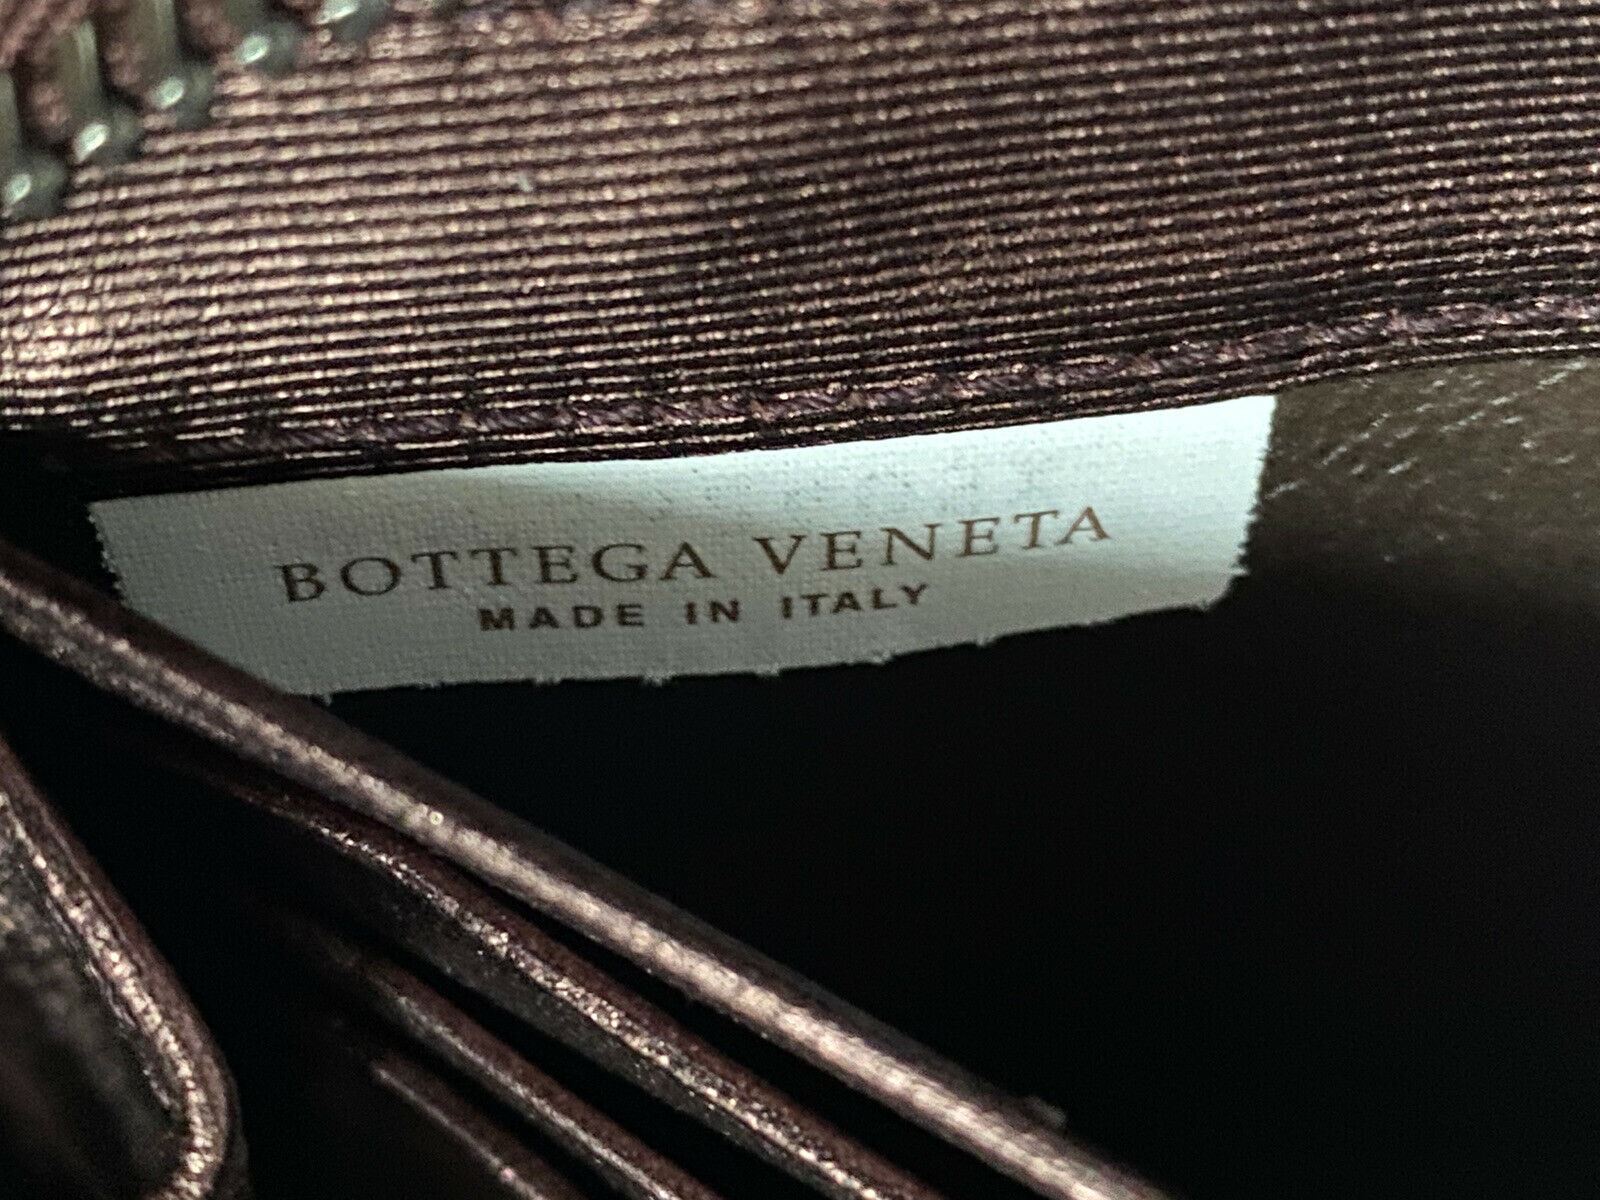 NWT Bottega Veneta Intrecciato Кошелек из крупной кожи на молнии Dk Barolo 518389 